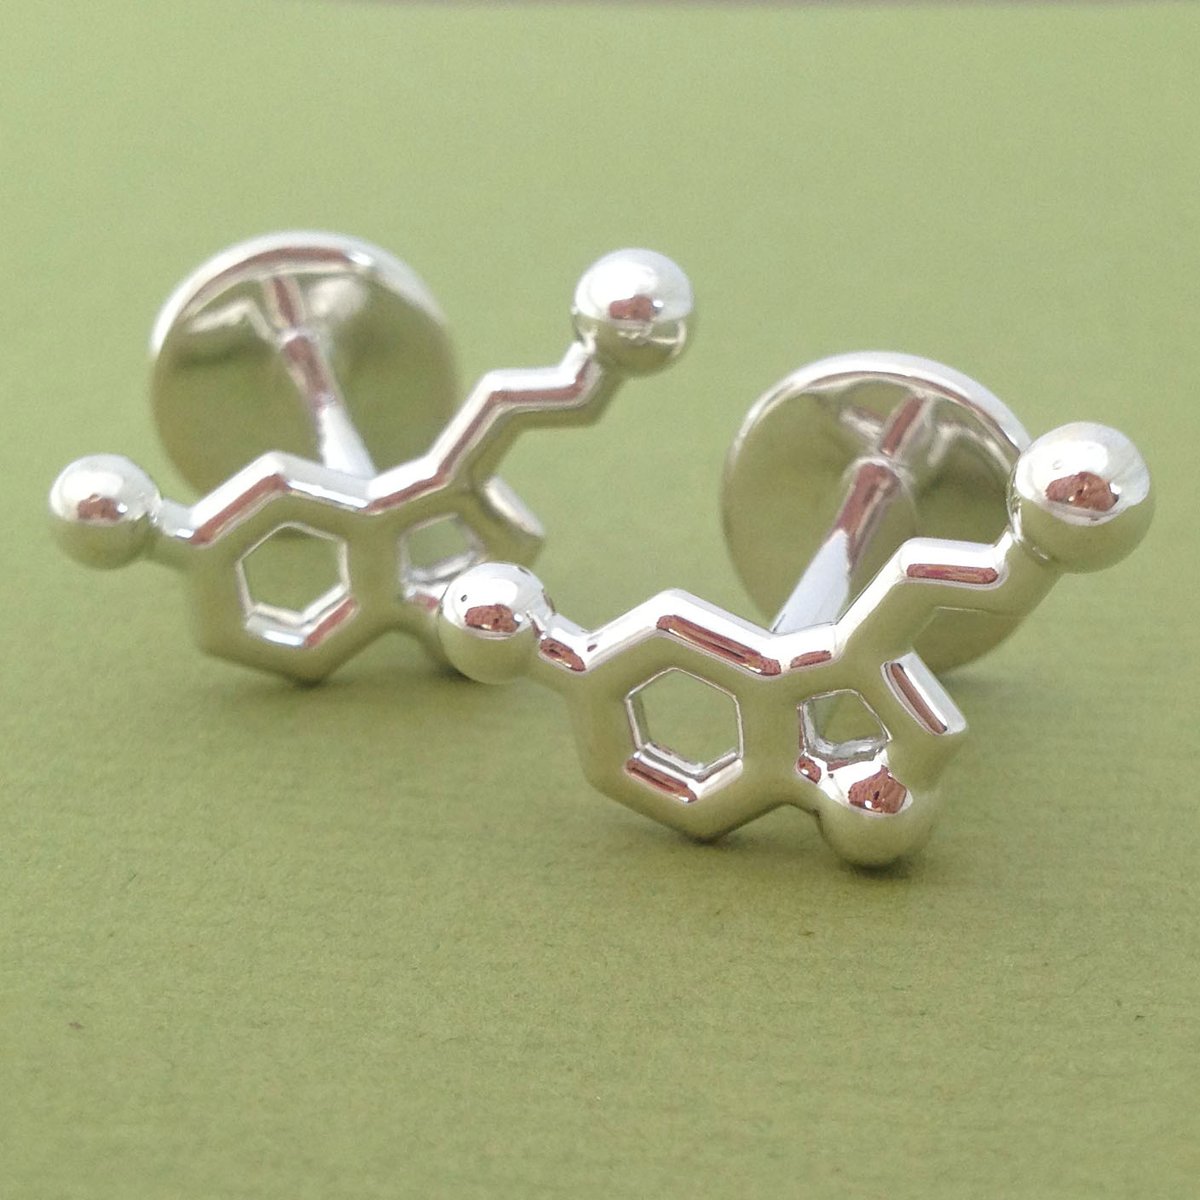 Image of serotonin cufflinks